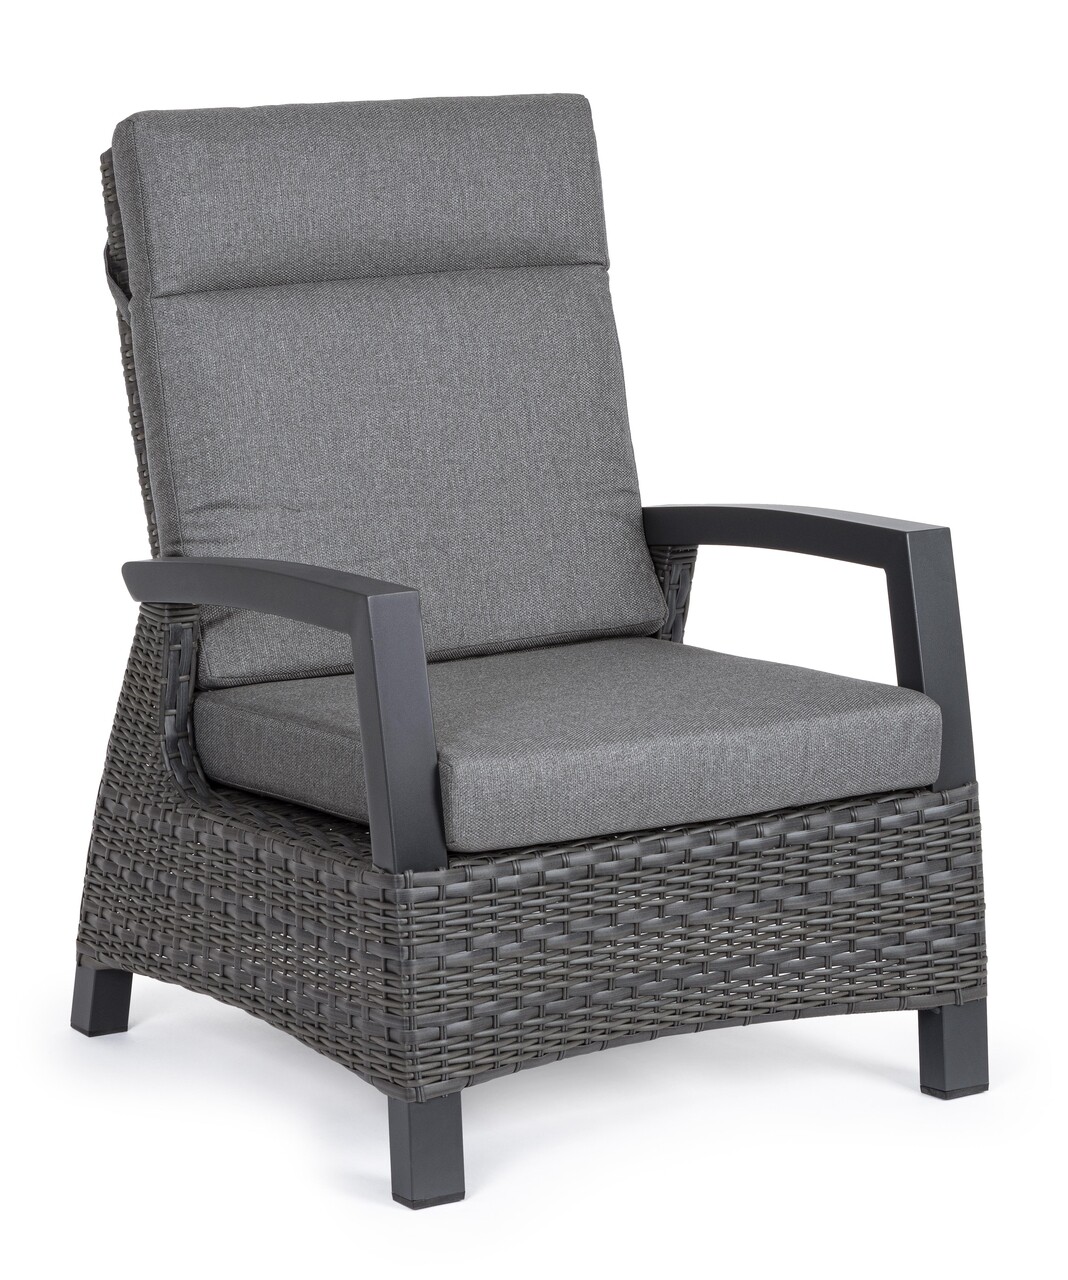 Britton kerti/terasz fotel, bizzotto, 73 x 83 x 103 cm, szintetikus szál/ ofelin szövet, szénszín